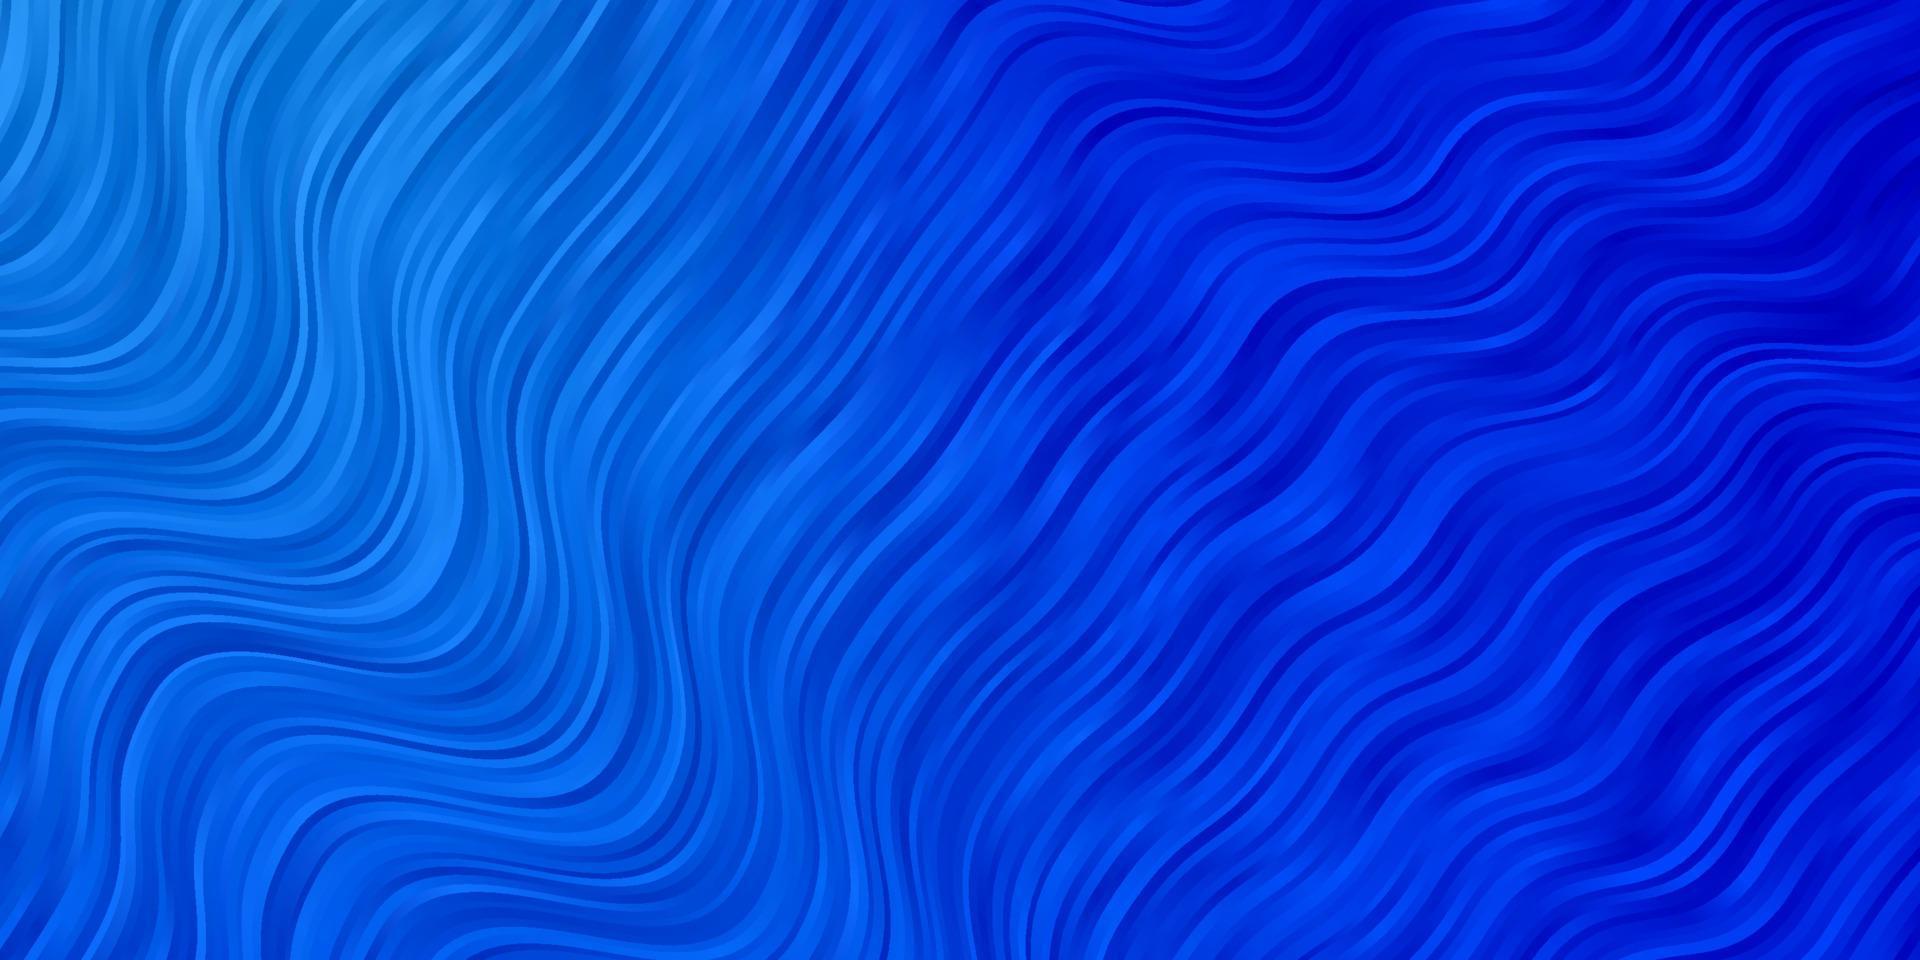 modello vettoriale azzurro con linee curve.